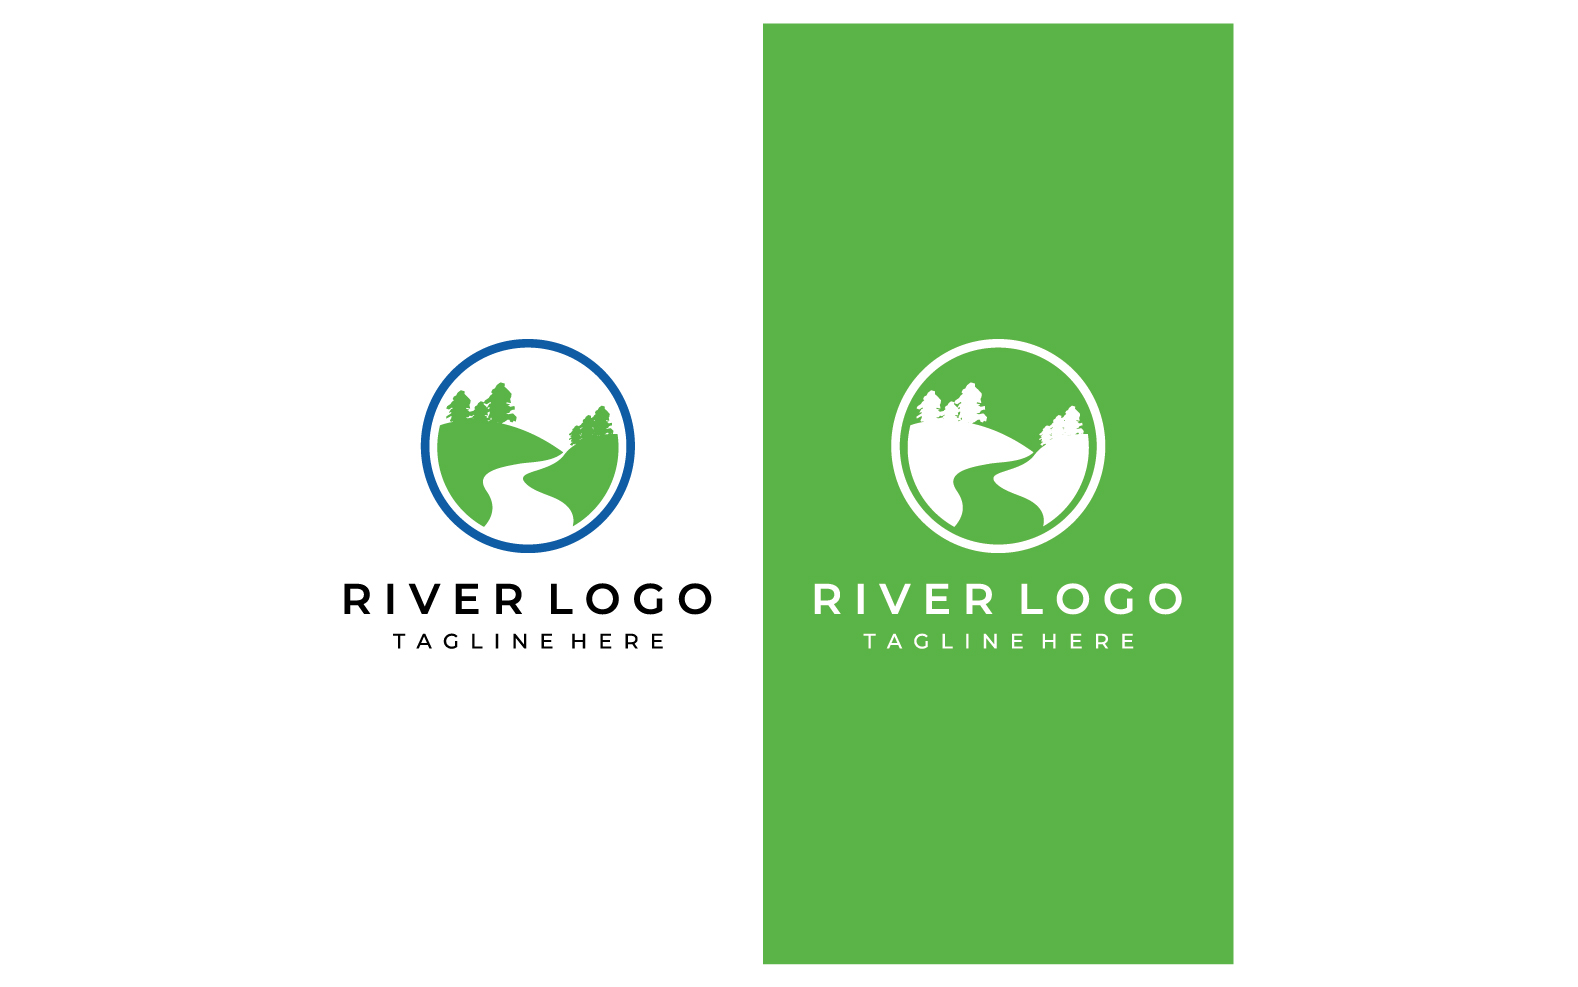 River nature logo and symbol vcetor 14